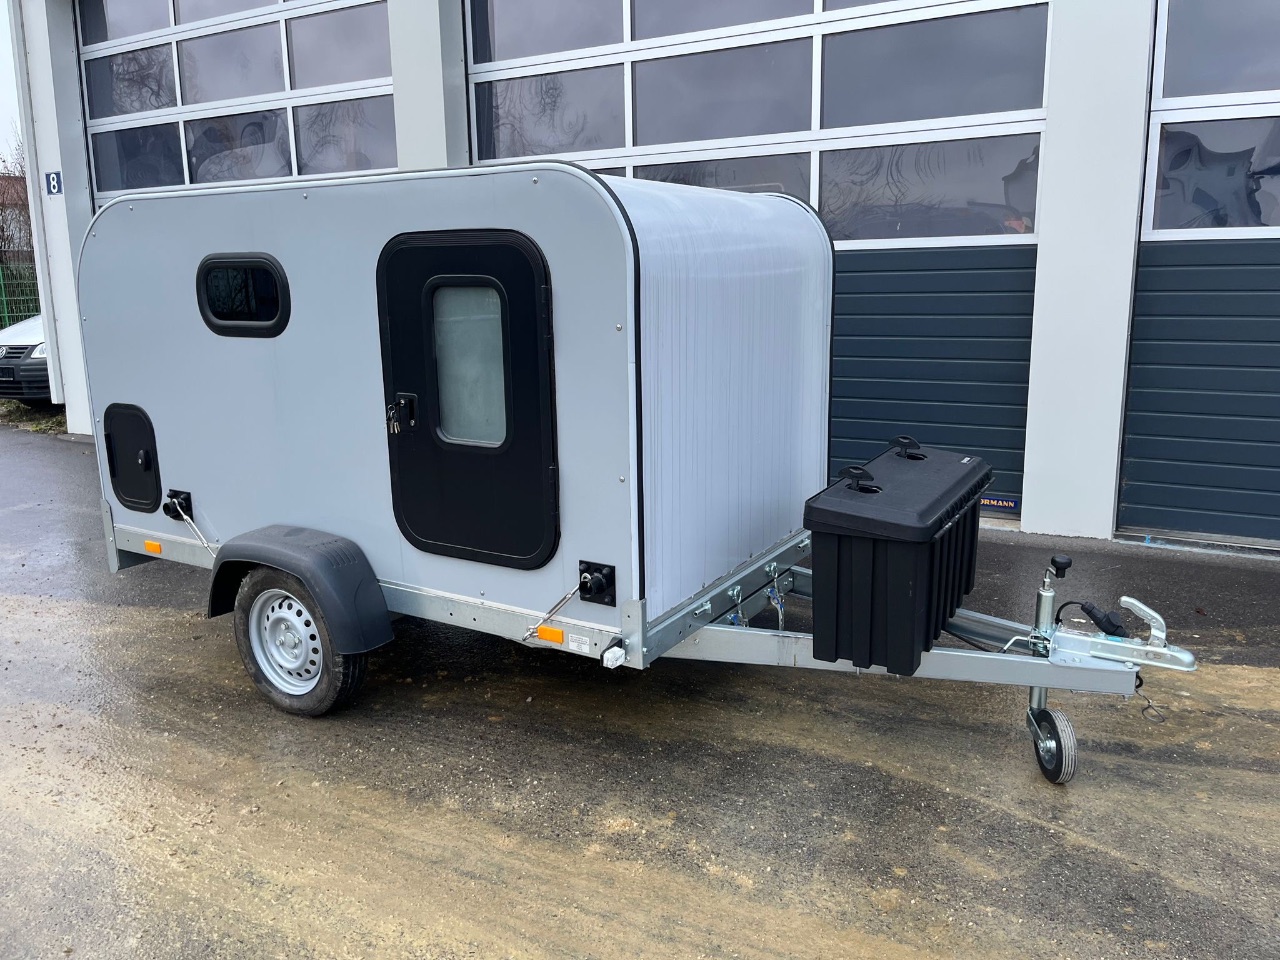 Camper - Wohnwagen - Anhänger (unbenutzt) - (Faro, 2-in-1) - (Baujahr: Dezember 2022) - (Startpreis: 4.900,00 EUR)